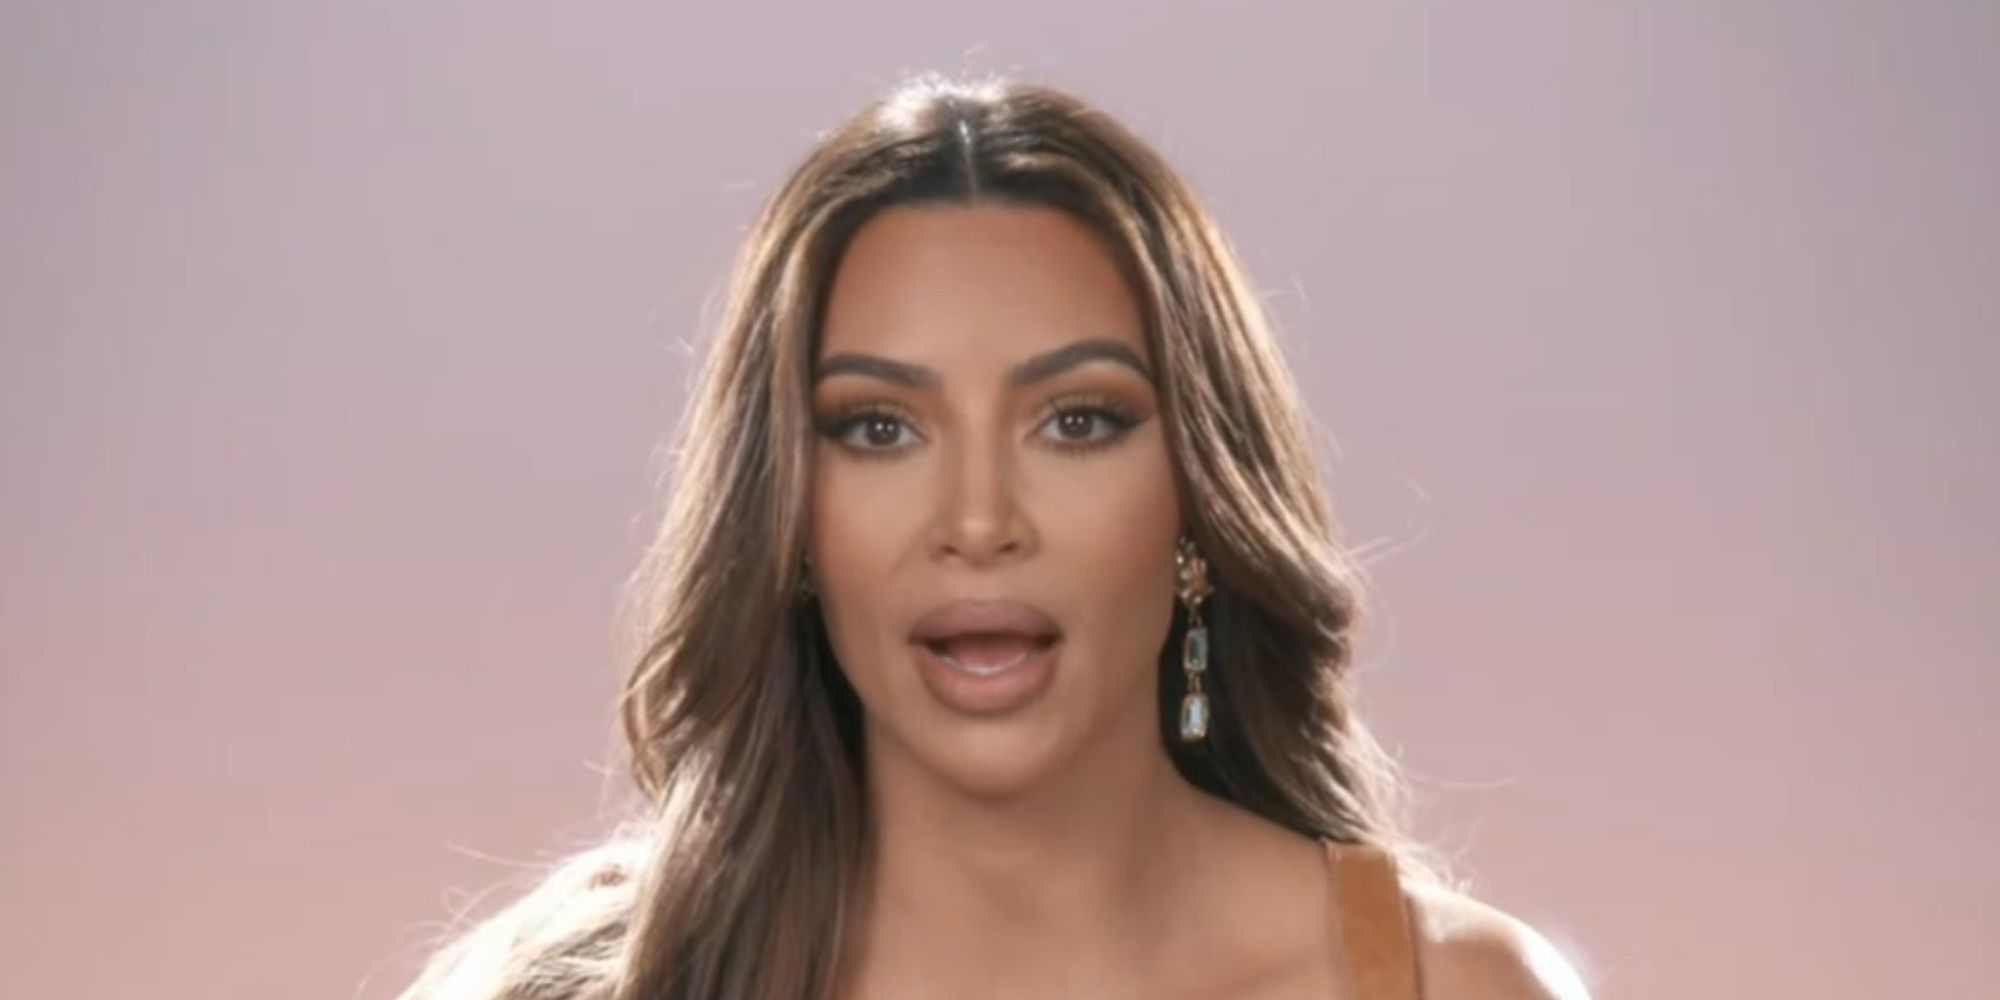 Kim Kardashian temporarily shutting down KKW Beauty, relaunching